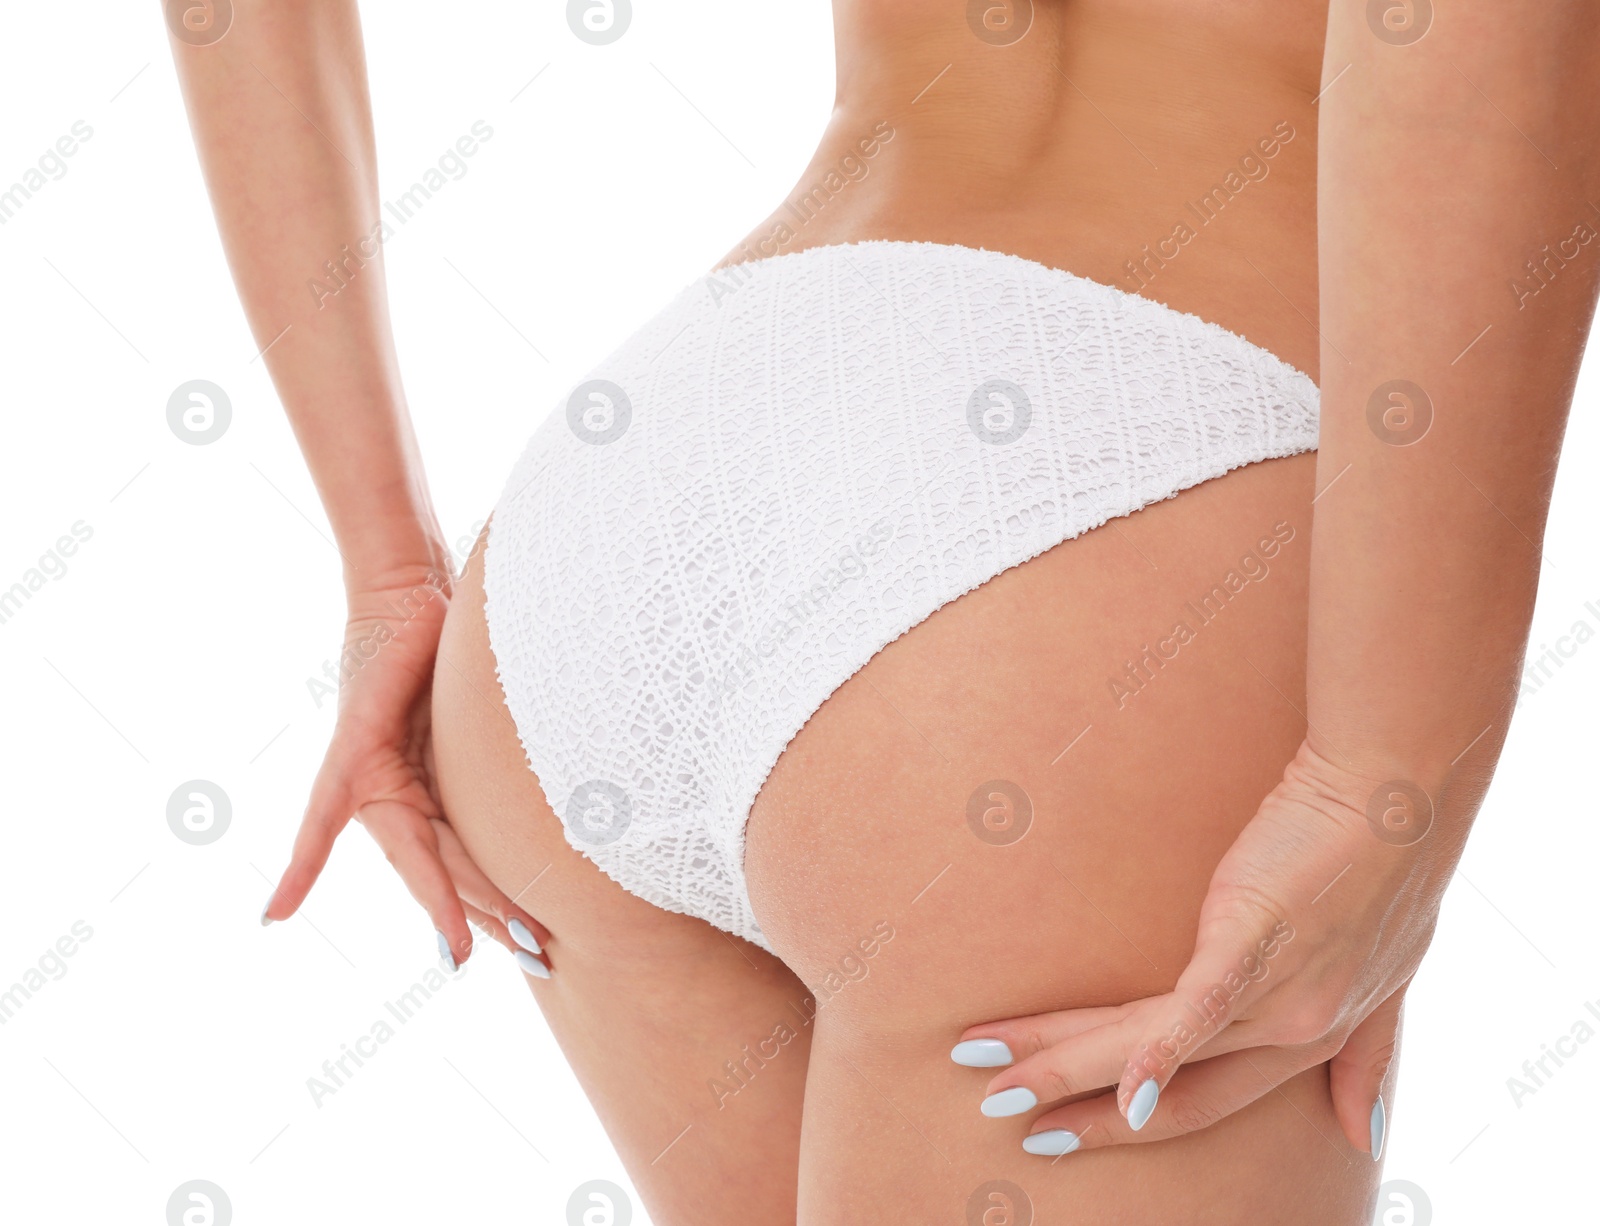 Photo of Sexy young woman wearing stylish bikini on white background, closeup view